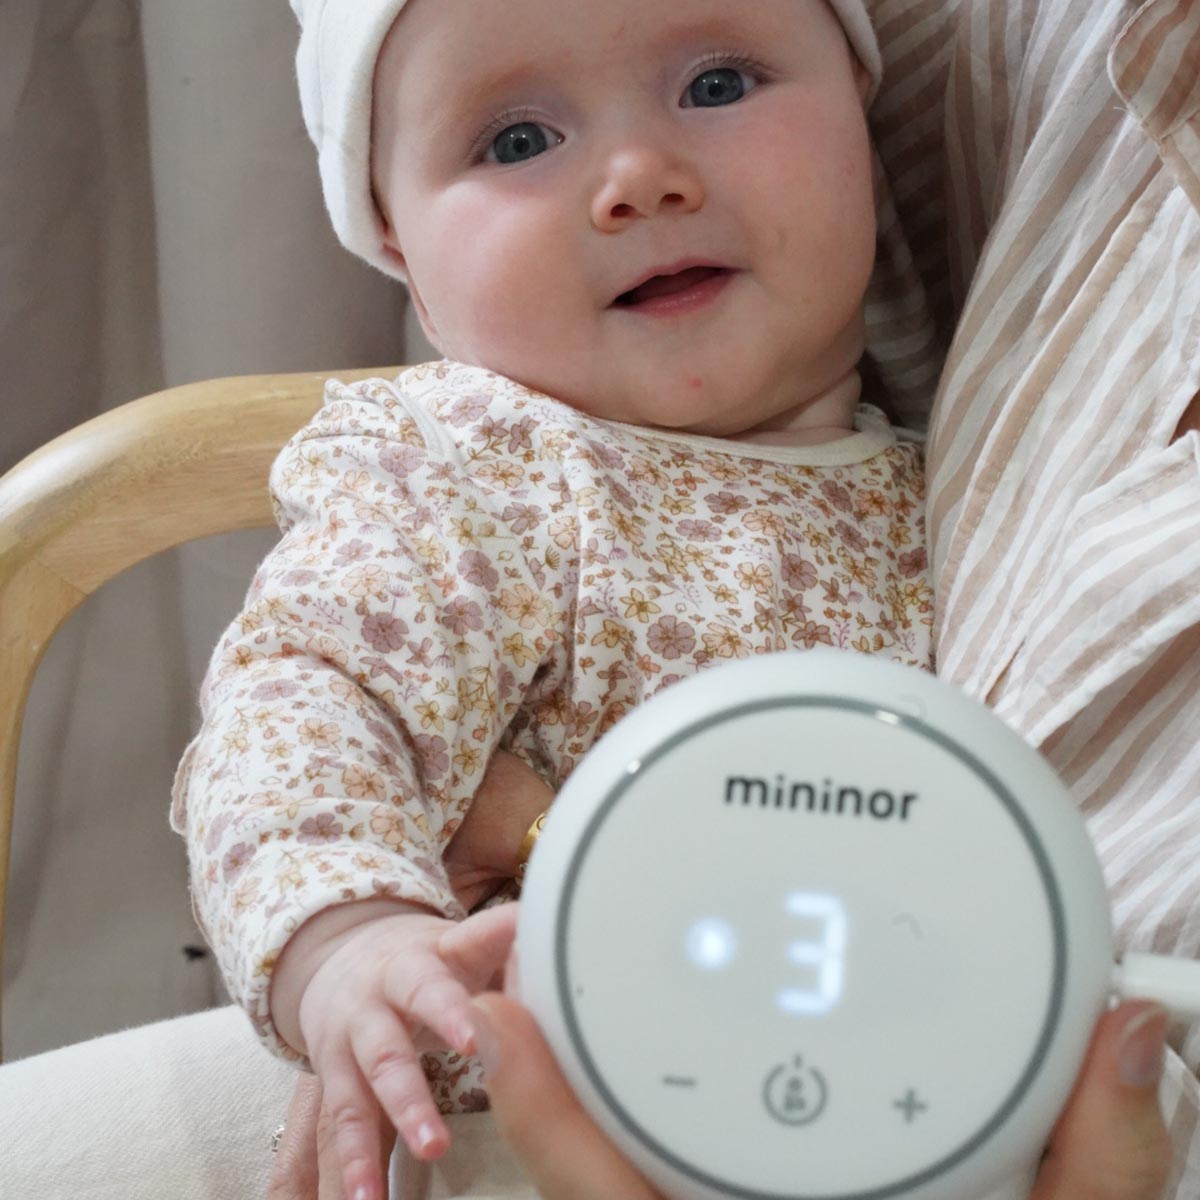 Mininor Essentials Bundle for Mum and Bub